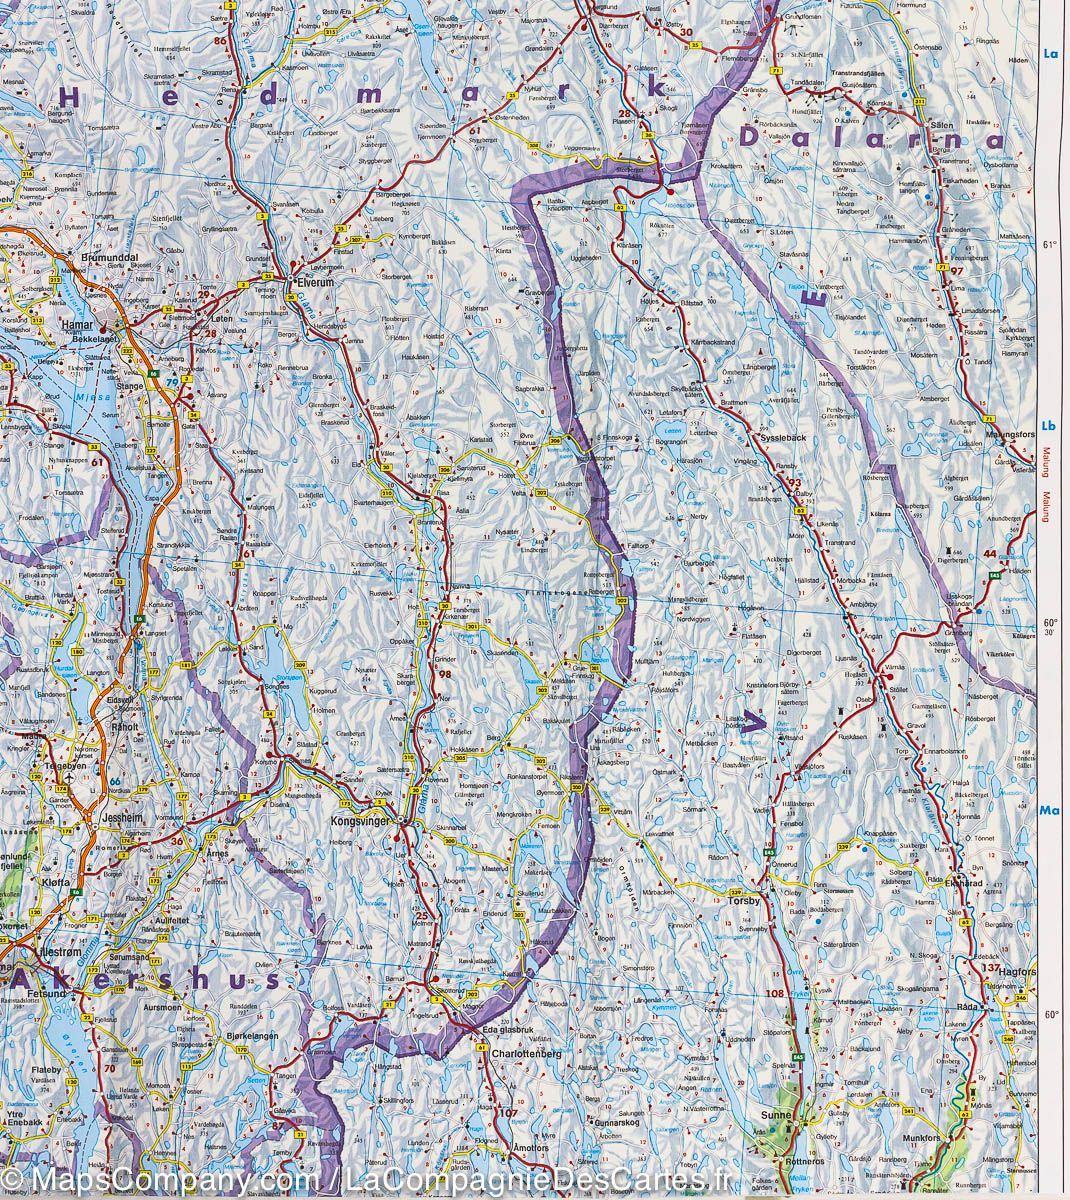 Carte routière - Norvège | Freytag & Berndt carte pliée Freytag & Berndt 